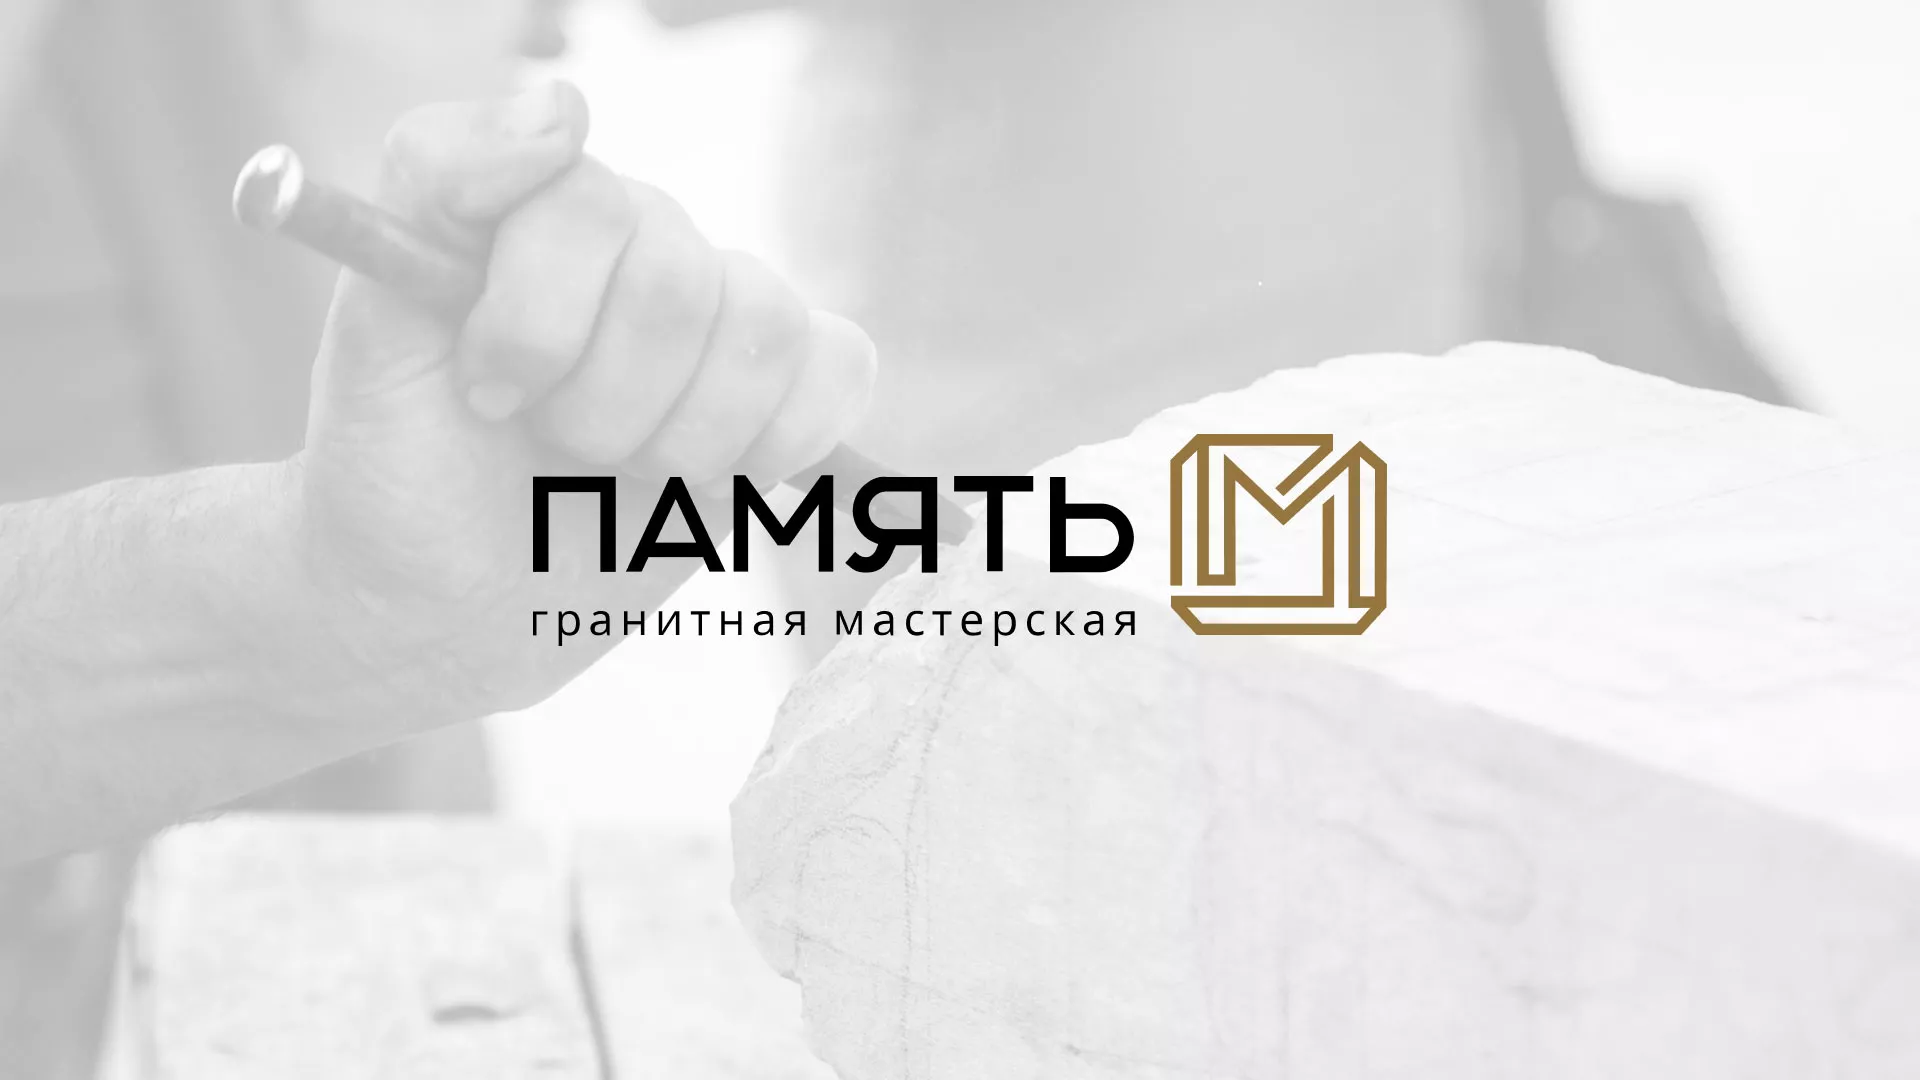 Разработка логотипа и сайта компании «Память-М» в Санкт-Петербурге